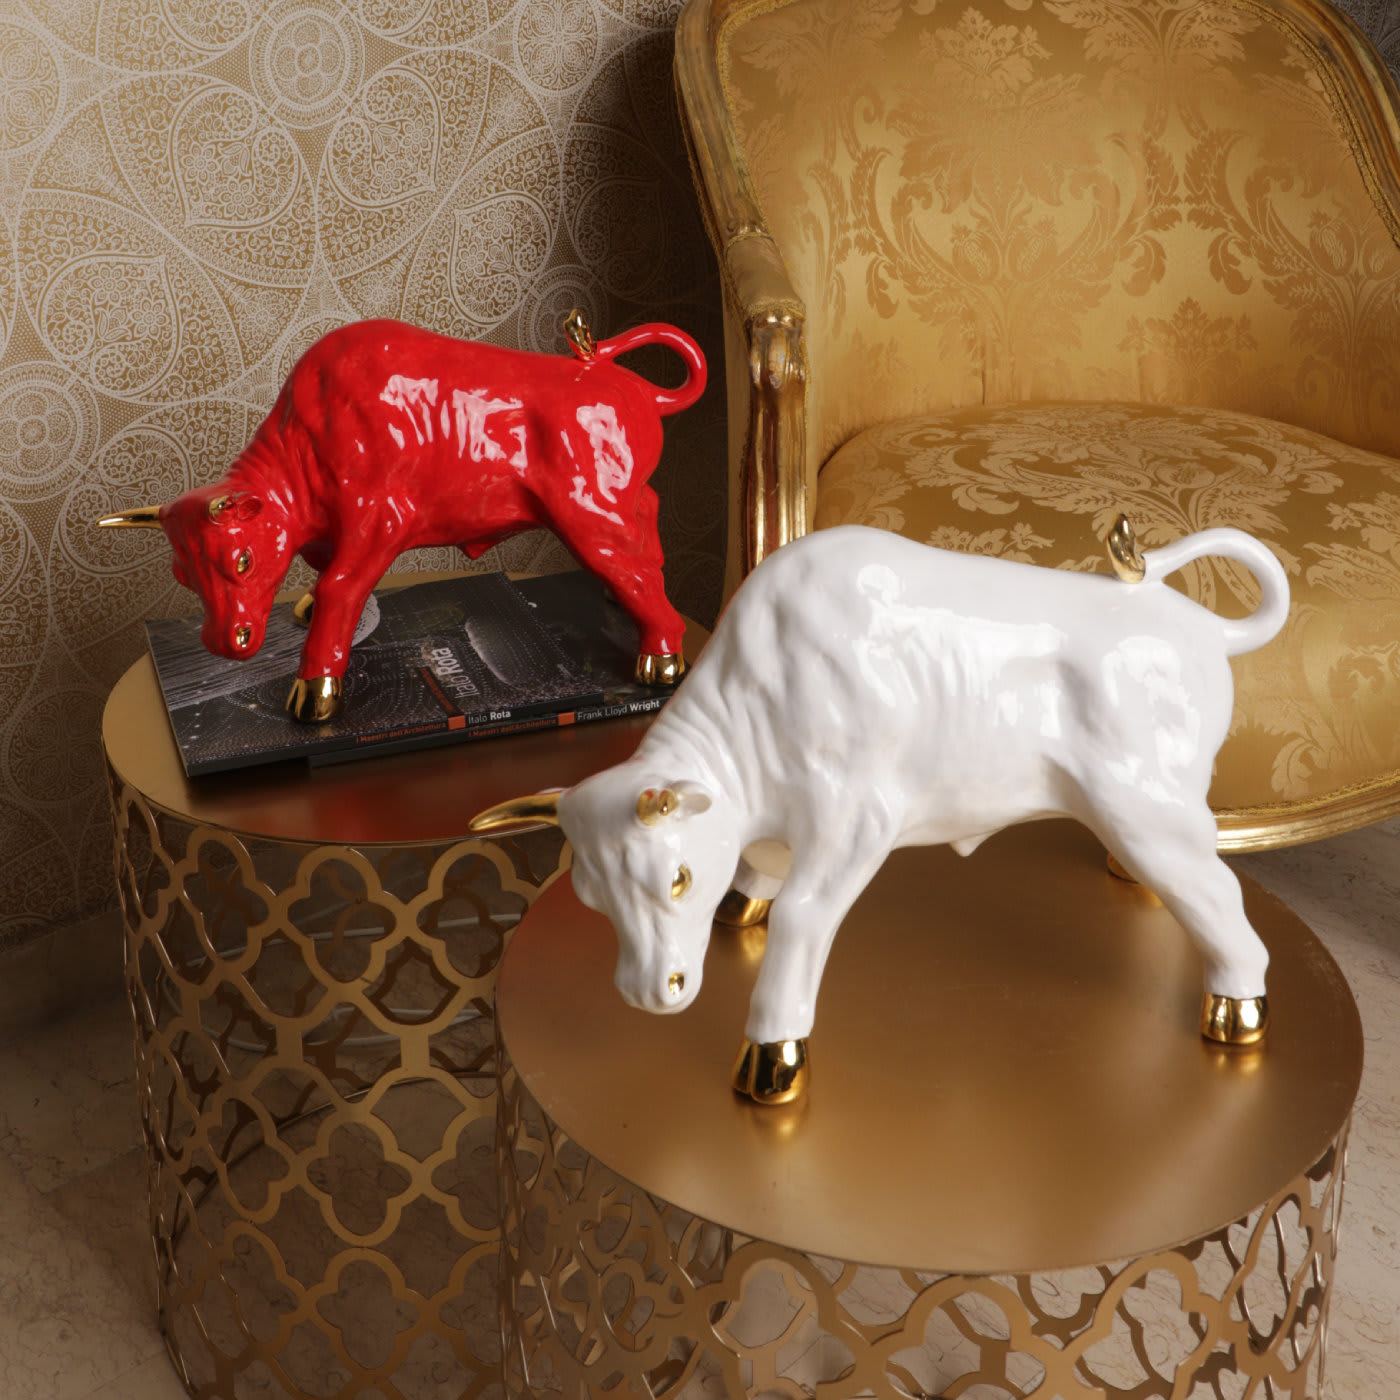 Red and Gold Bull - Ceramiche Artistiche Giannini